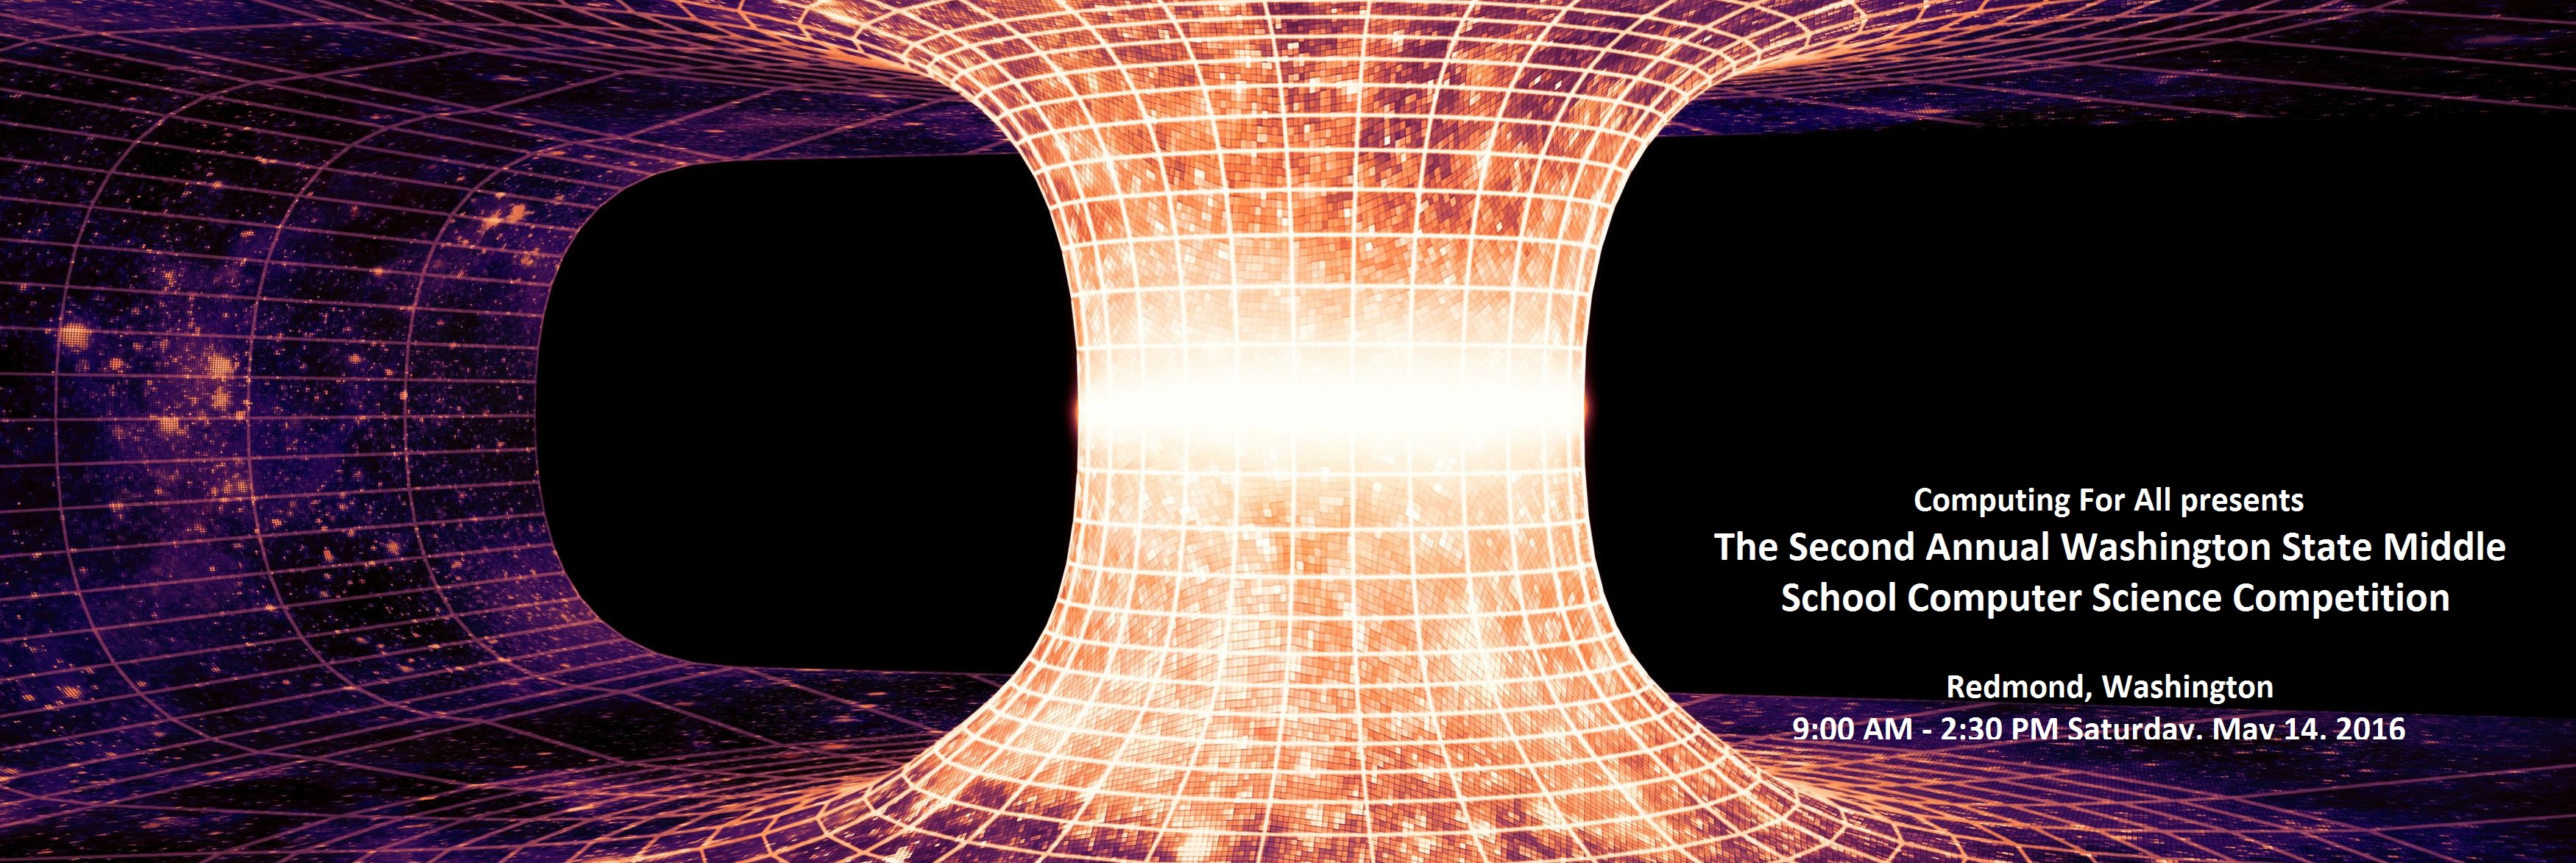 A wormhole, or Einstein-Rosen Bridge